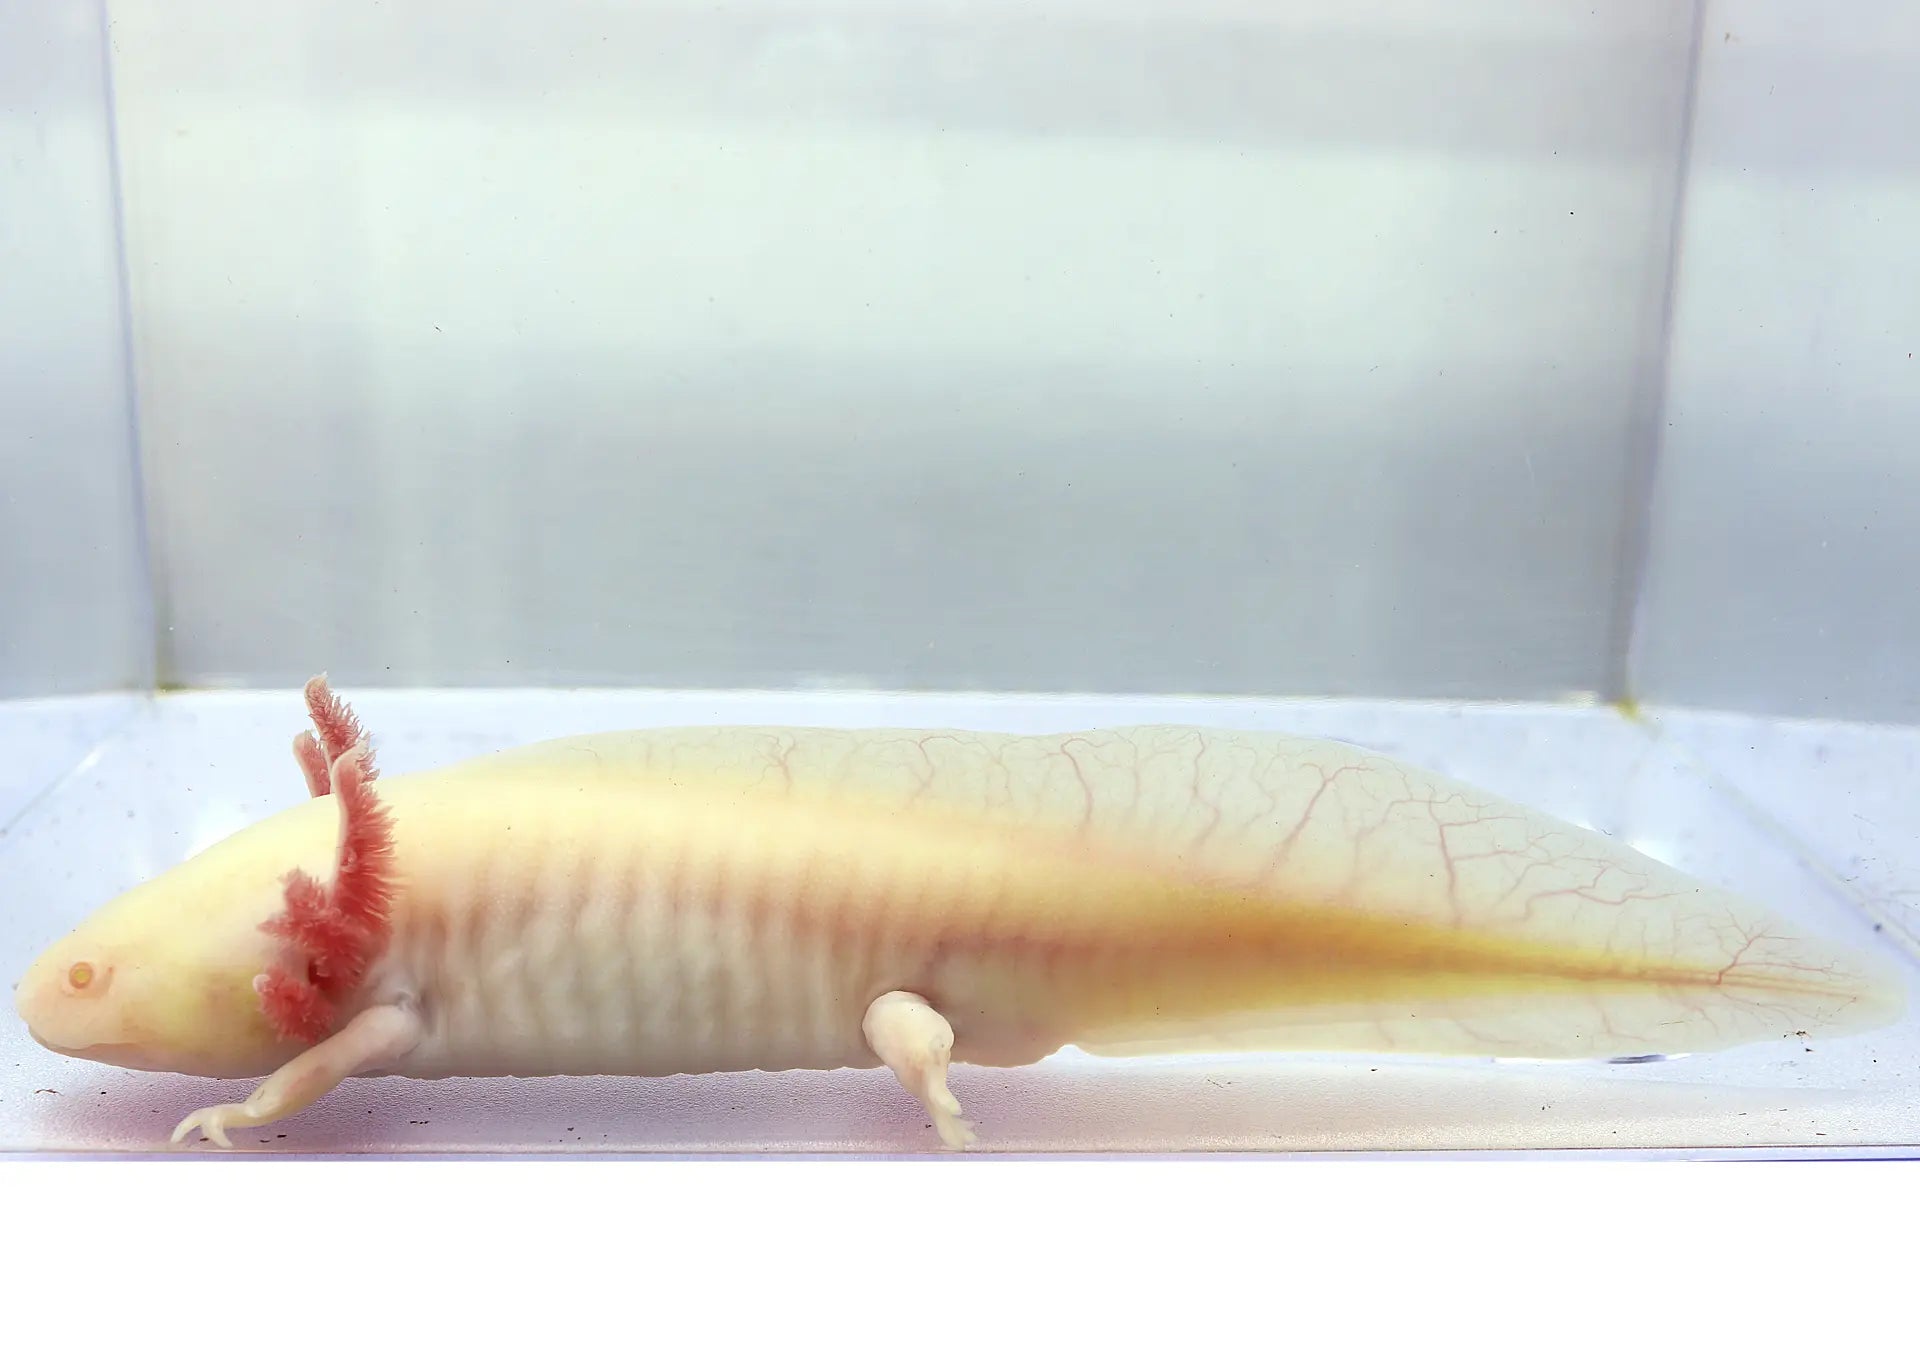 GFP Albino Axolotl